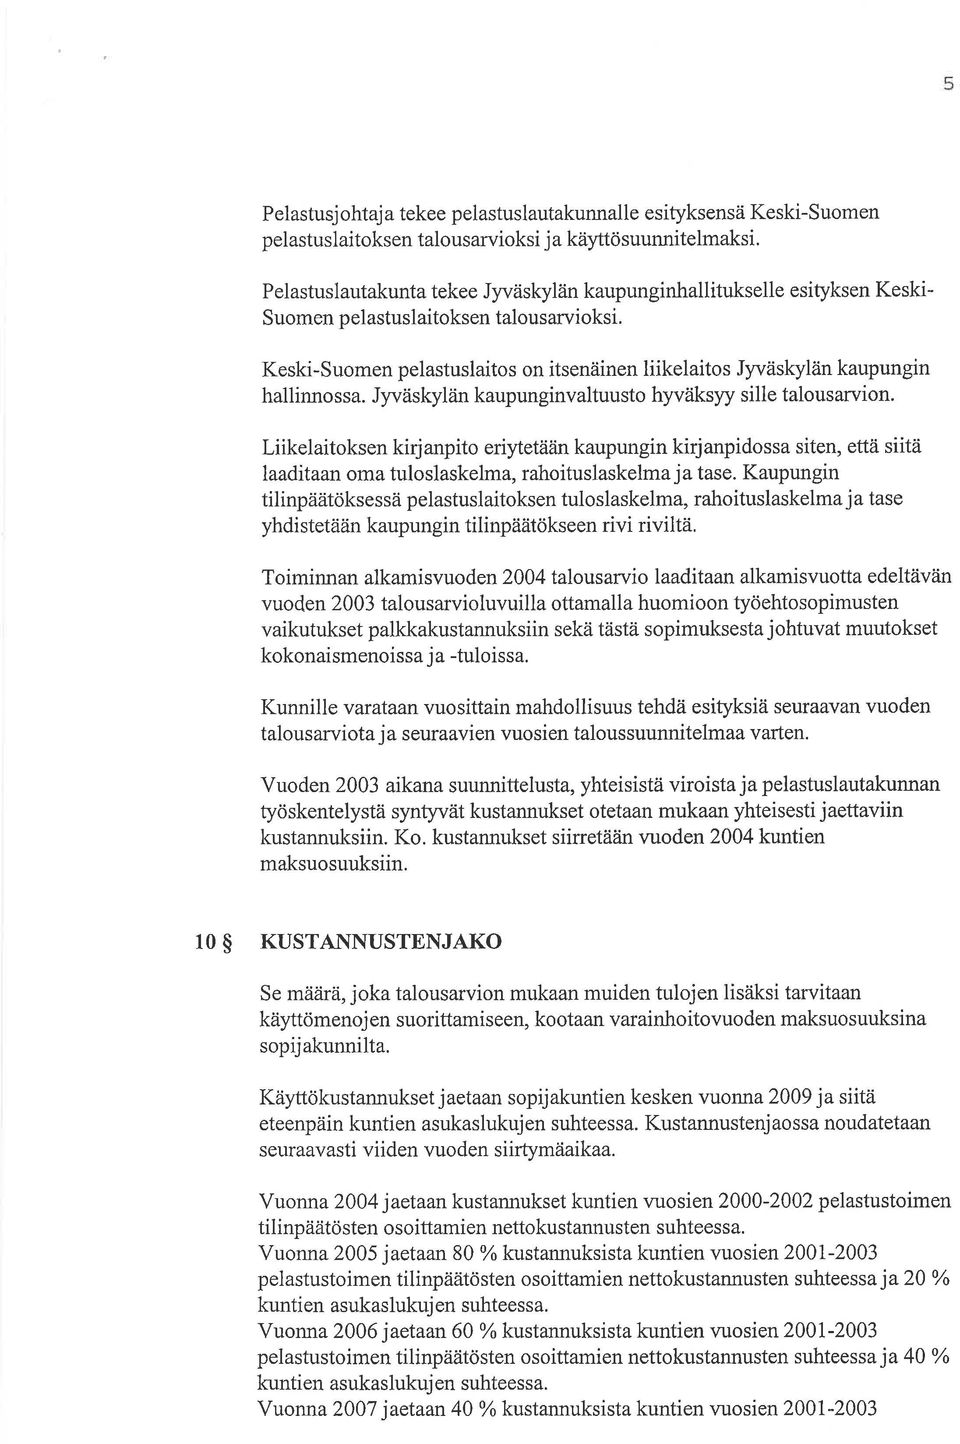 Keski-Suomen pelastuslaitos on itsenäinen liikelaitos Jyväskylän kaupungin hallinno s sa. Jyväskylåin kaupunginvaltuusto hyväksyy sille talous arvion.